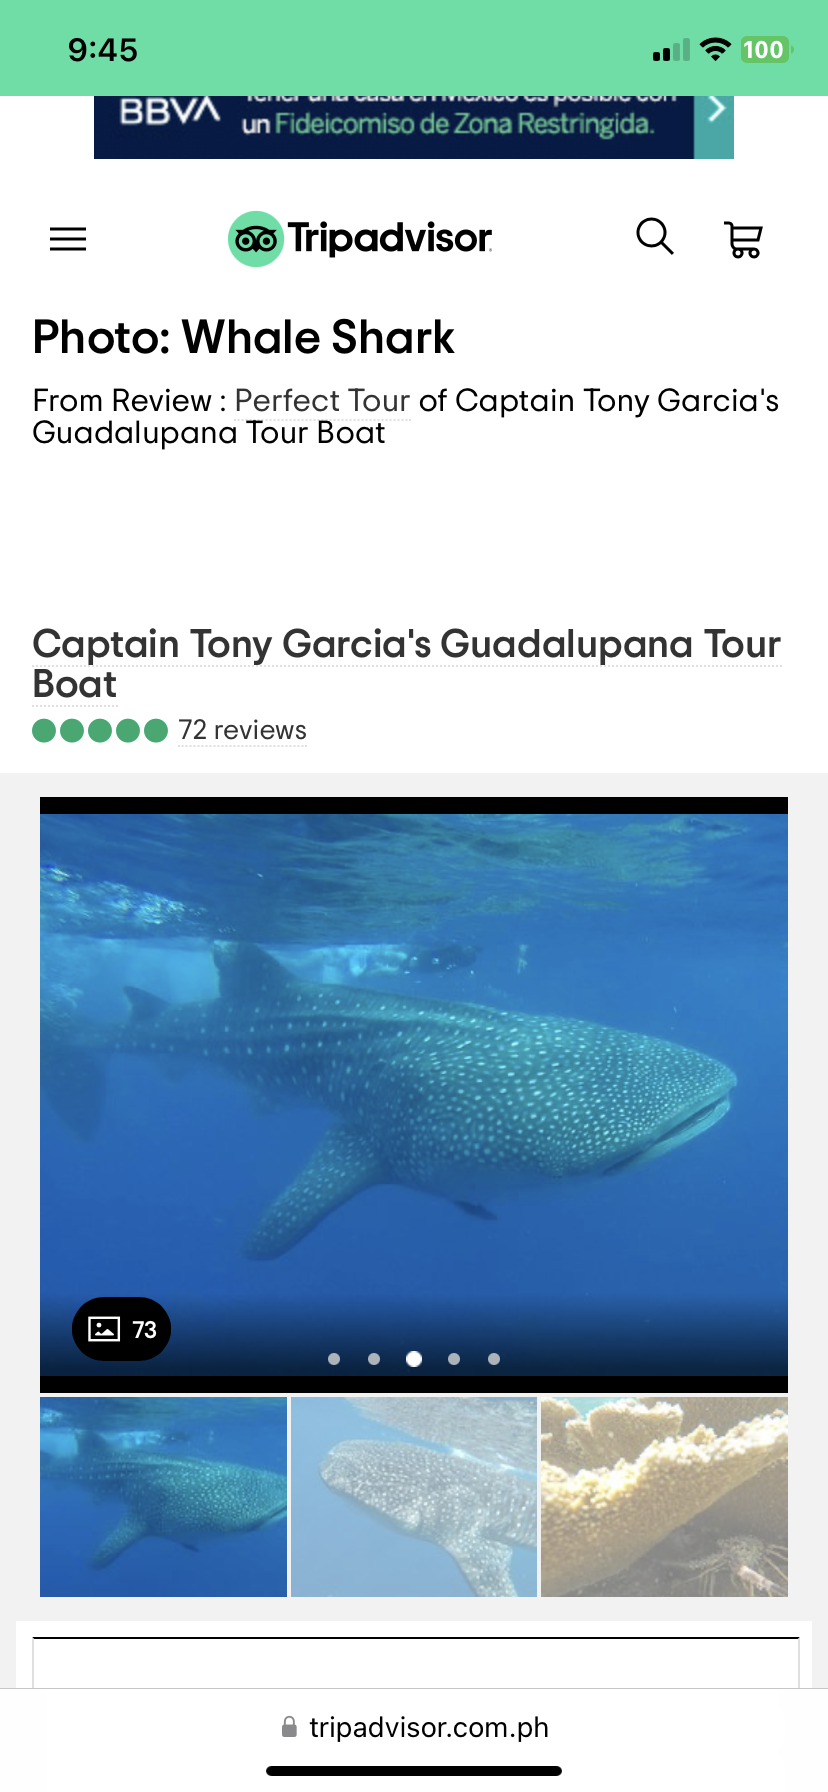 Captain Tony Garcia's Guadalupans Tour Boat